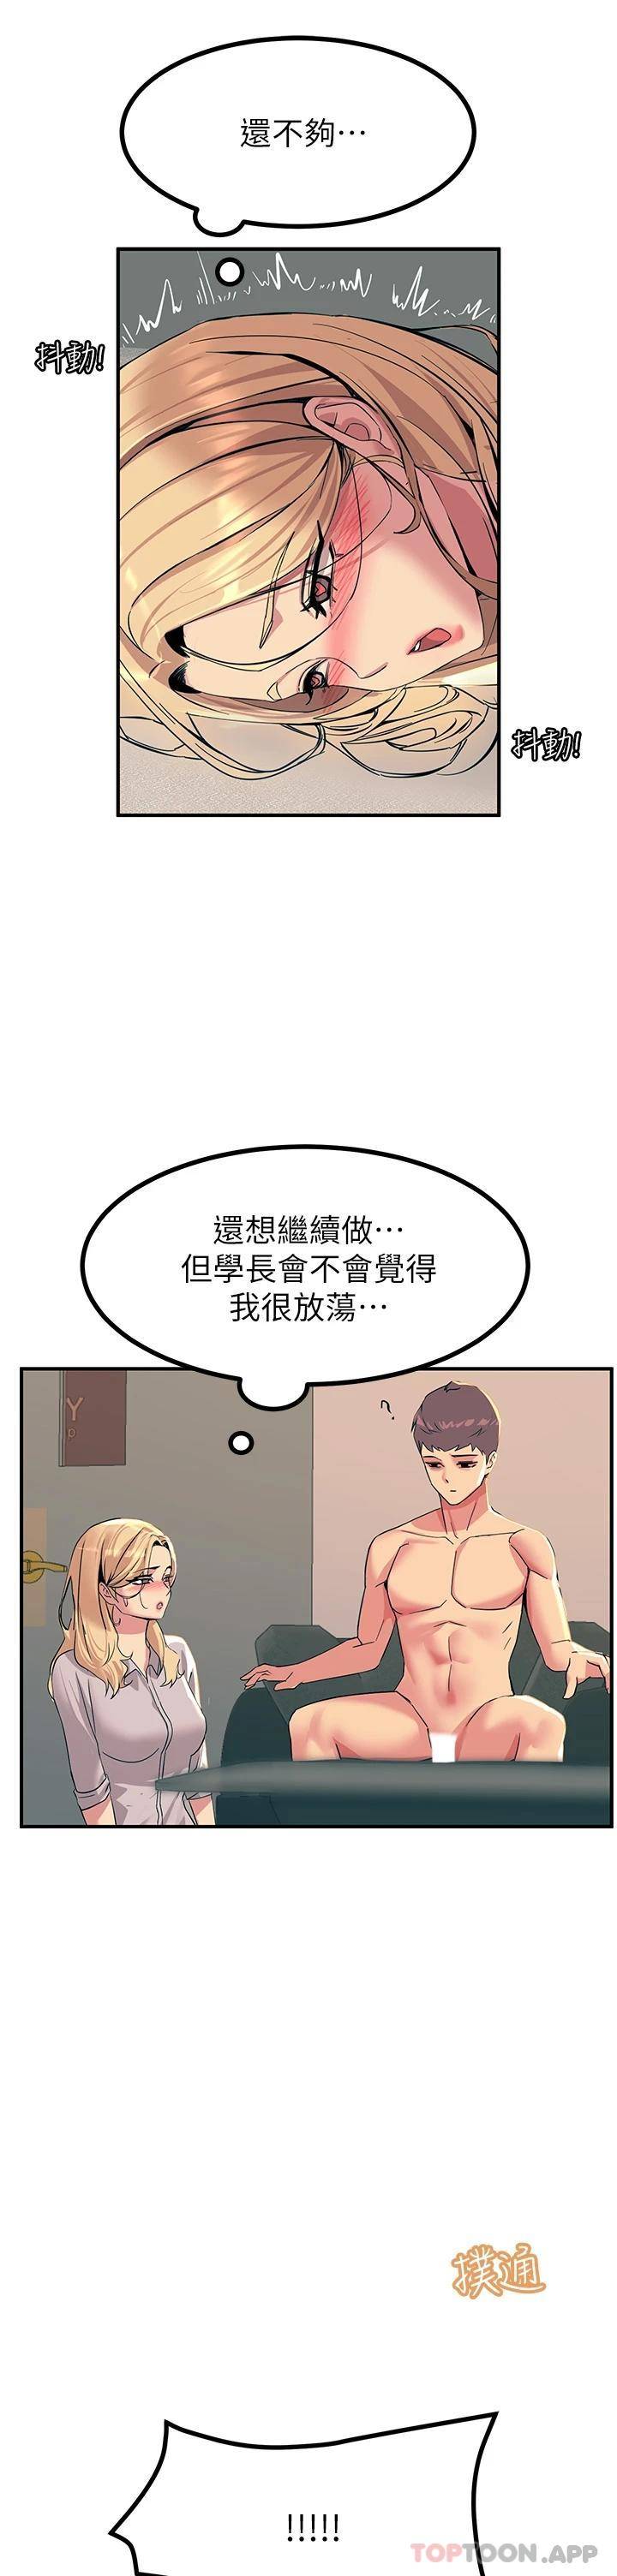 韩国污漫画 觸電大師 第16话 喜欢像母狗一样被干! 46